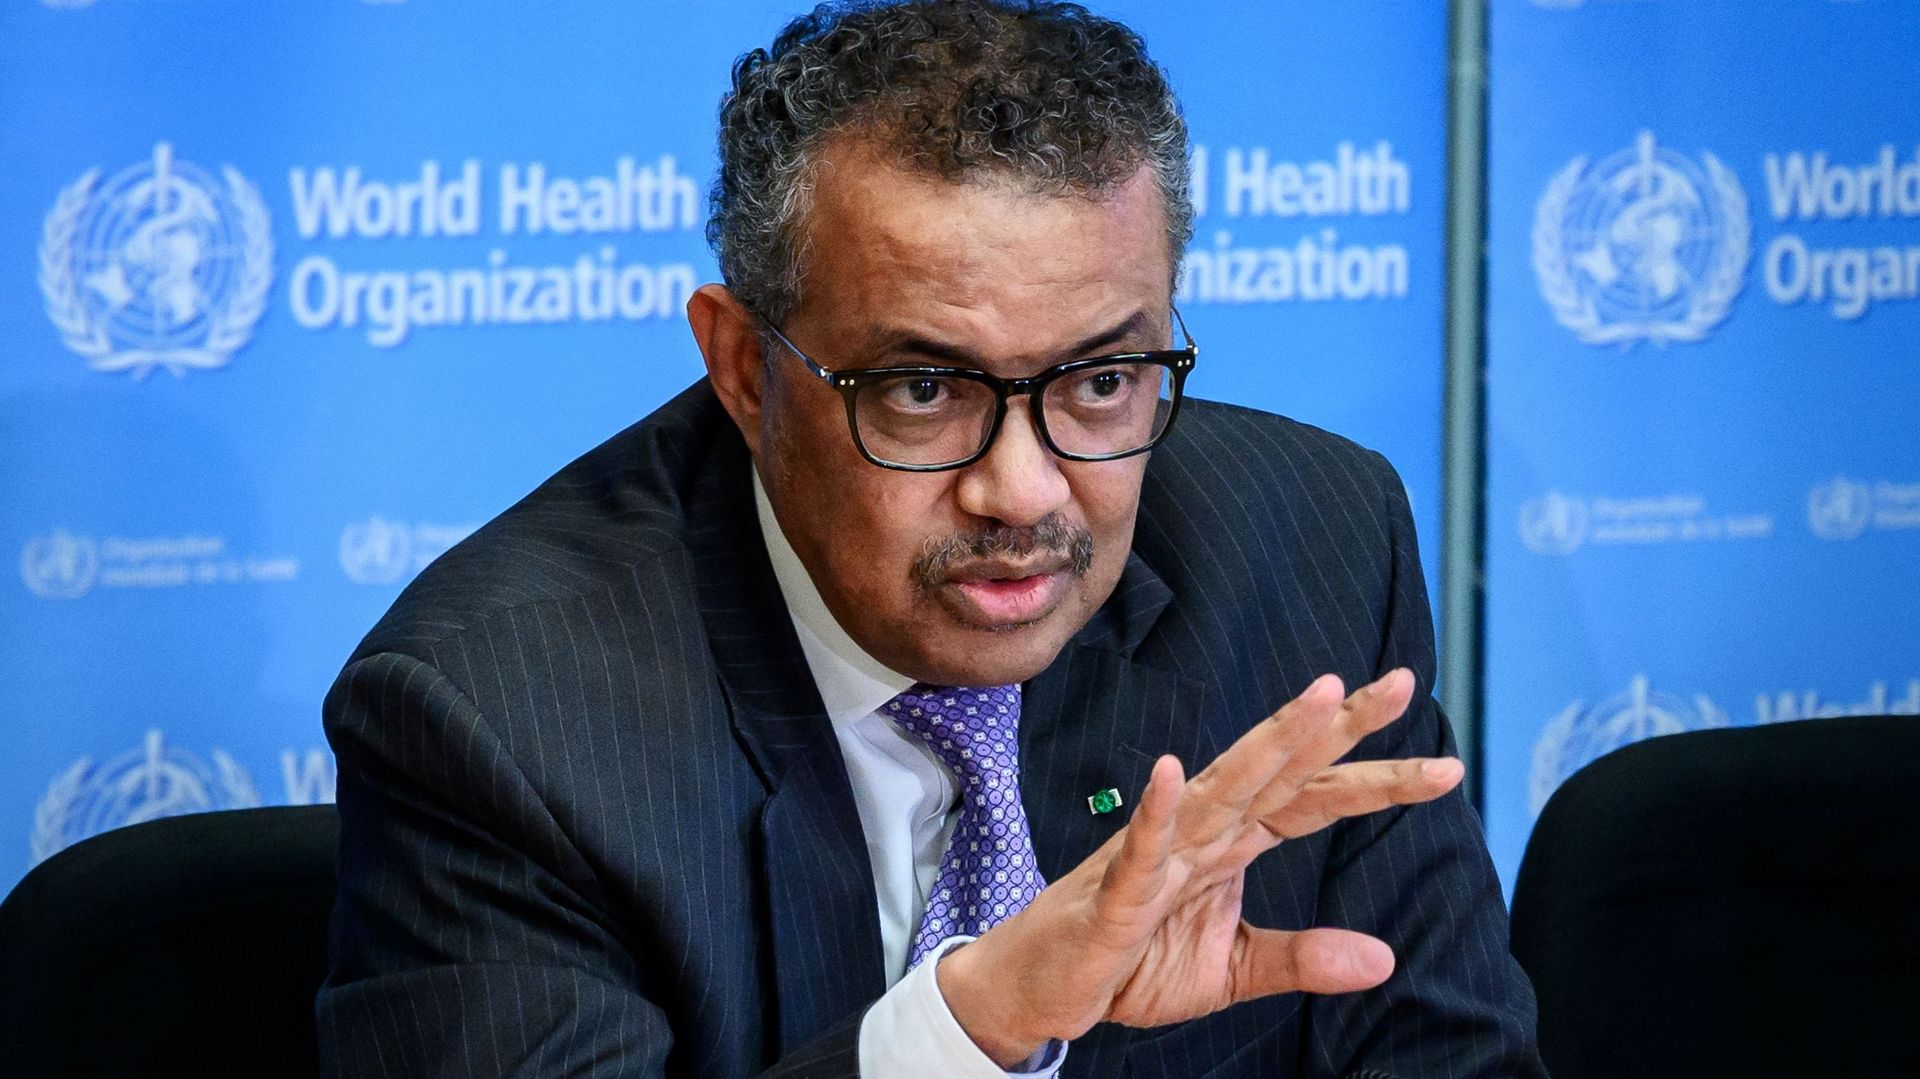 Le directeur général de l'Organisation mondiale de la santé (OMS), Tedros Adhanom Ghebreyesus, lors d'une conférence de presse quotidienne sur le virus COVID-19 au siège de l'OMS.